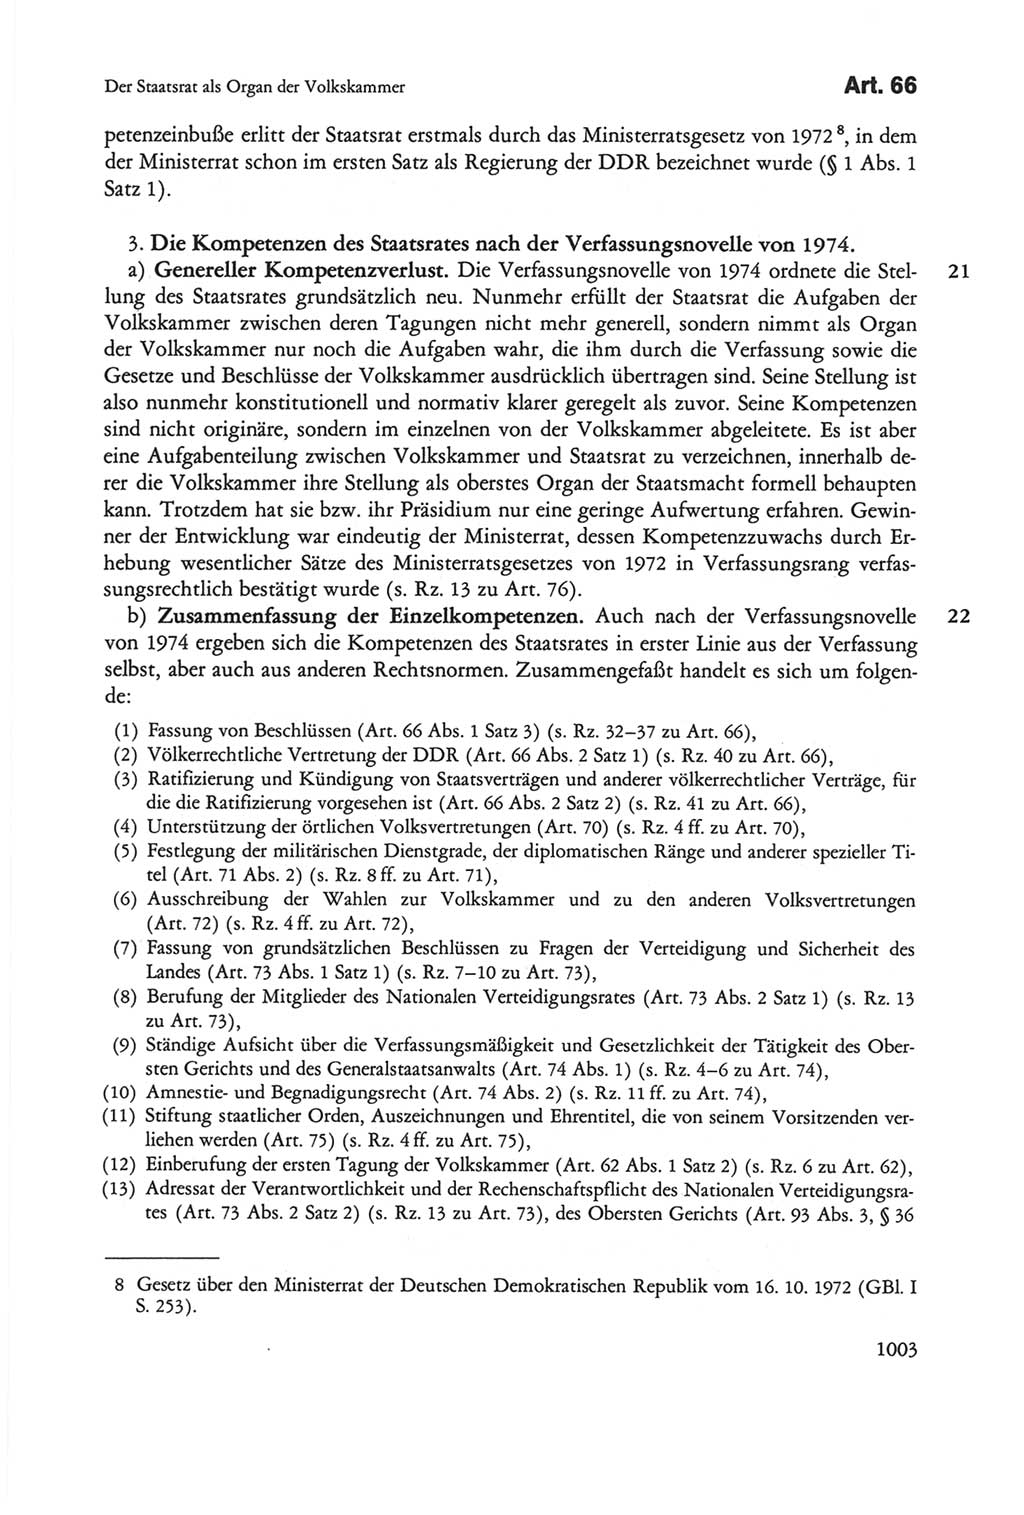 Die sozialistische Verfassung der Deutschen Demokratischen Republik (DDR), Kommentar 1982, Seite 1003 (Soz. Verf. DDR Komm. 1982, S. 1003)